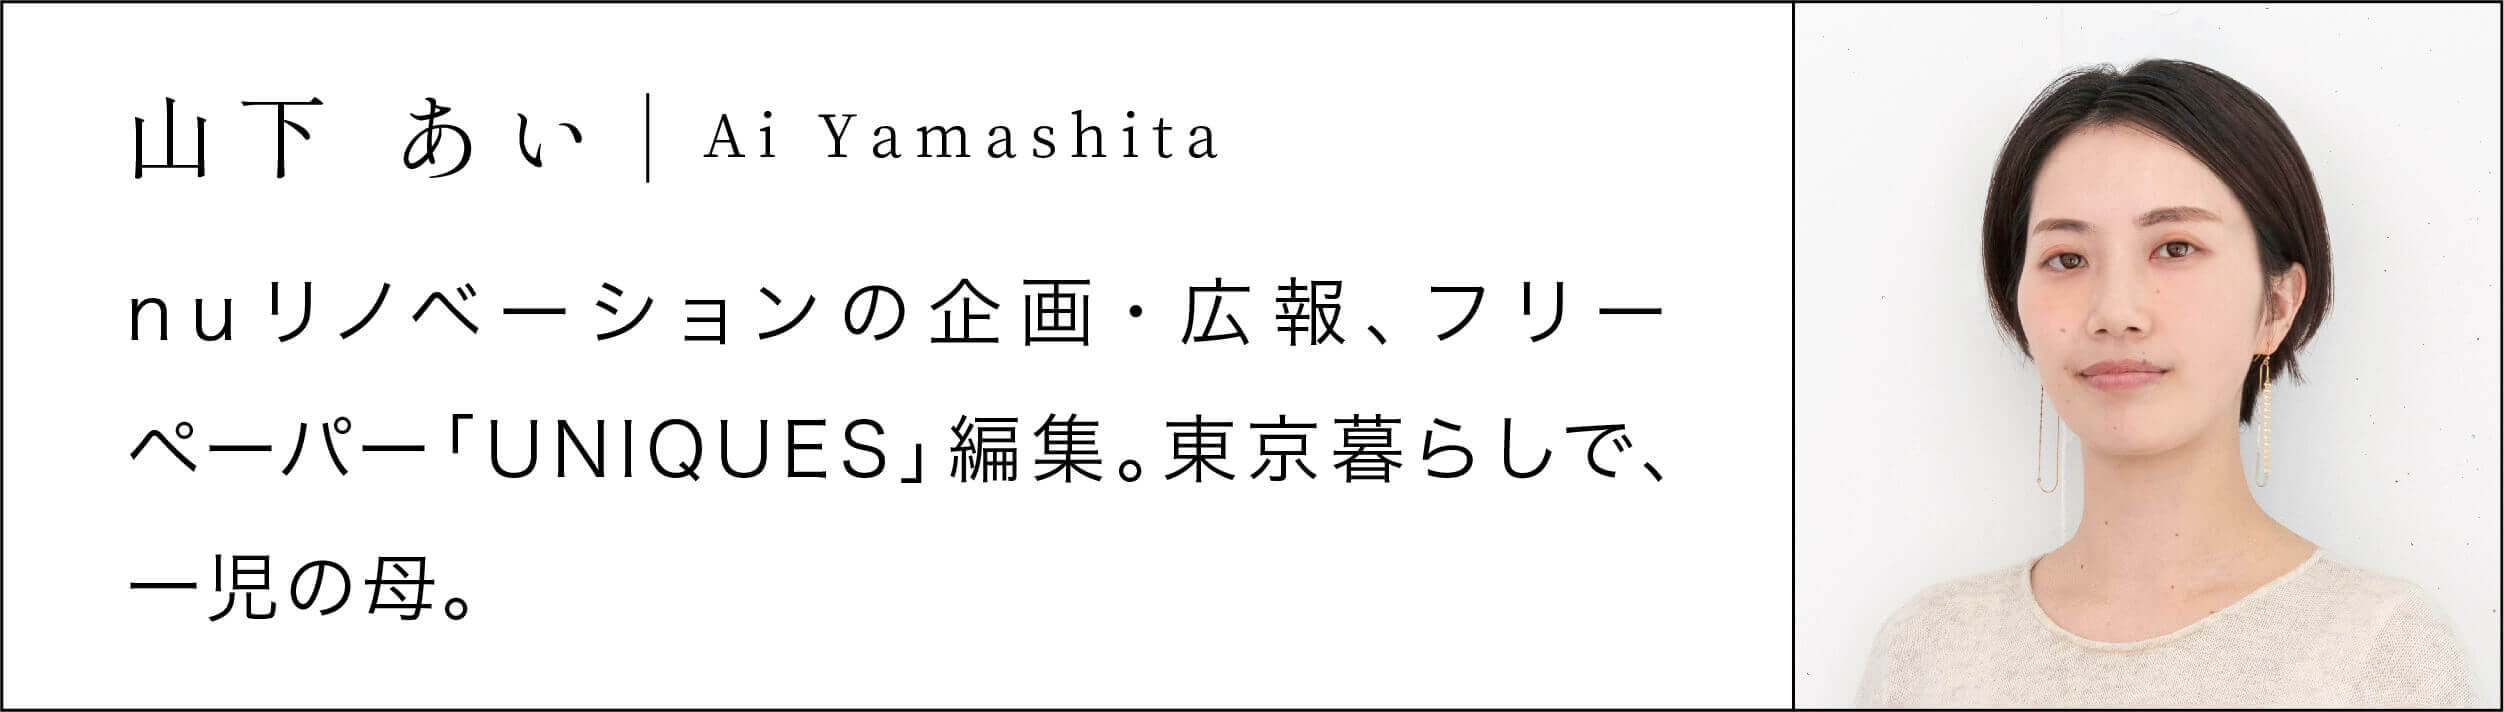 アリスさんvol.3_yamashita